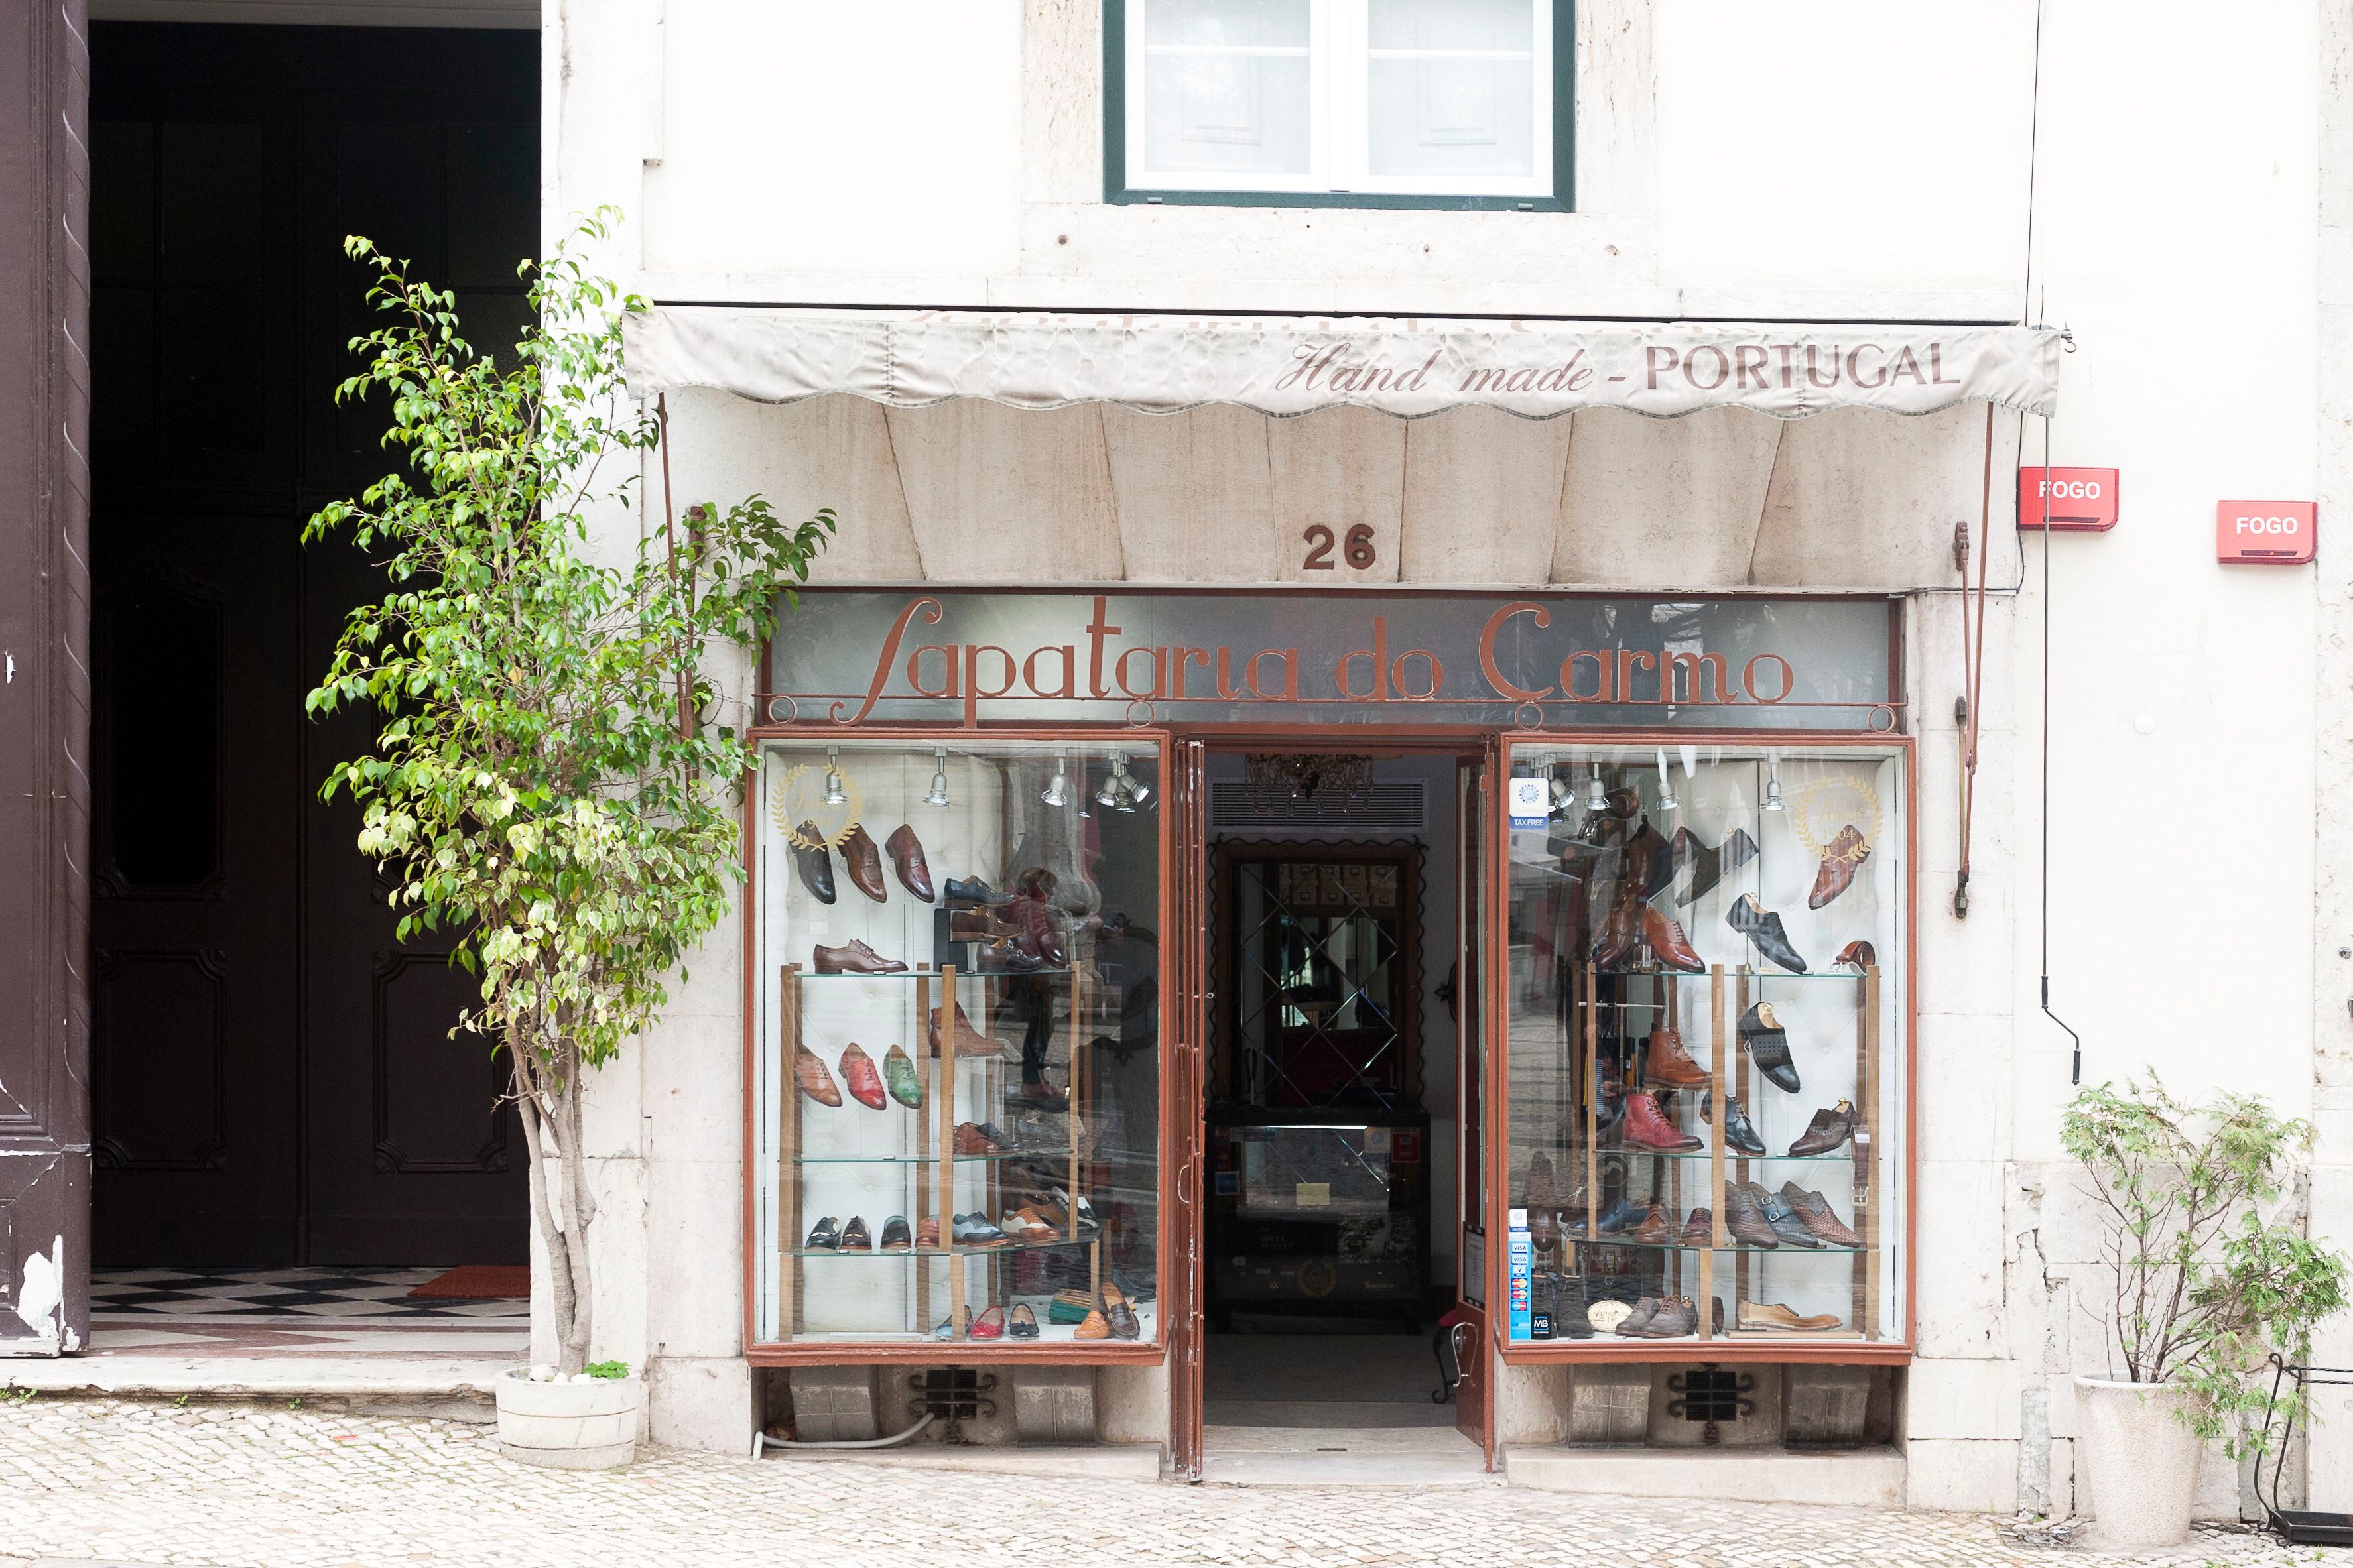 Escaparate de la Sapataria do Carmo, tienda de zapatos fundada en 1904 en la calle Largo do Carmo de Lisboa. 